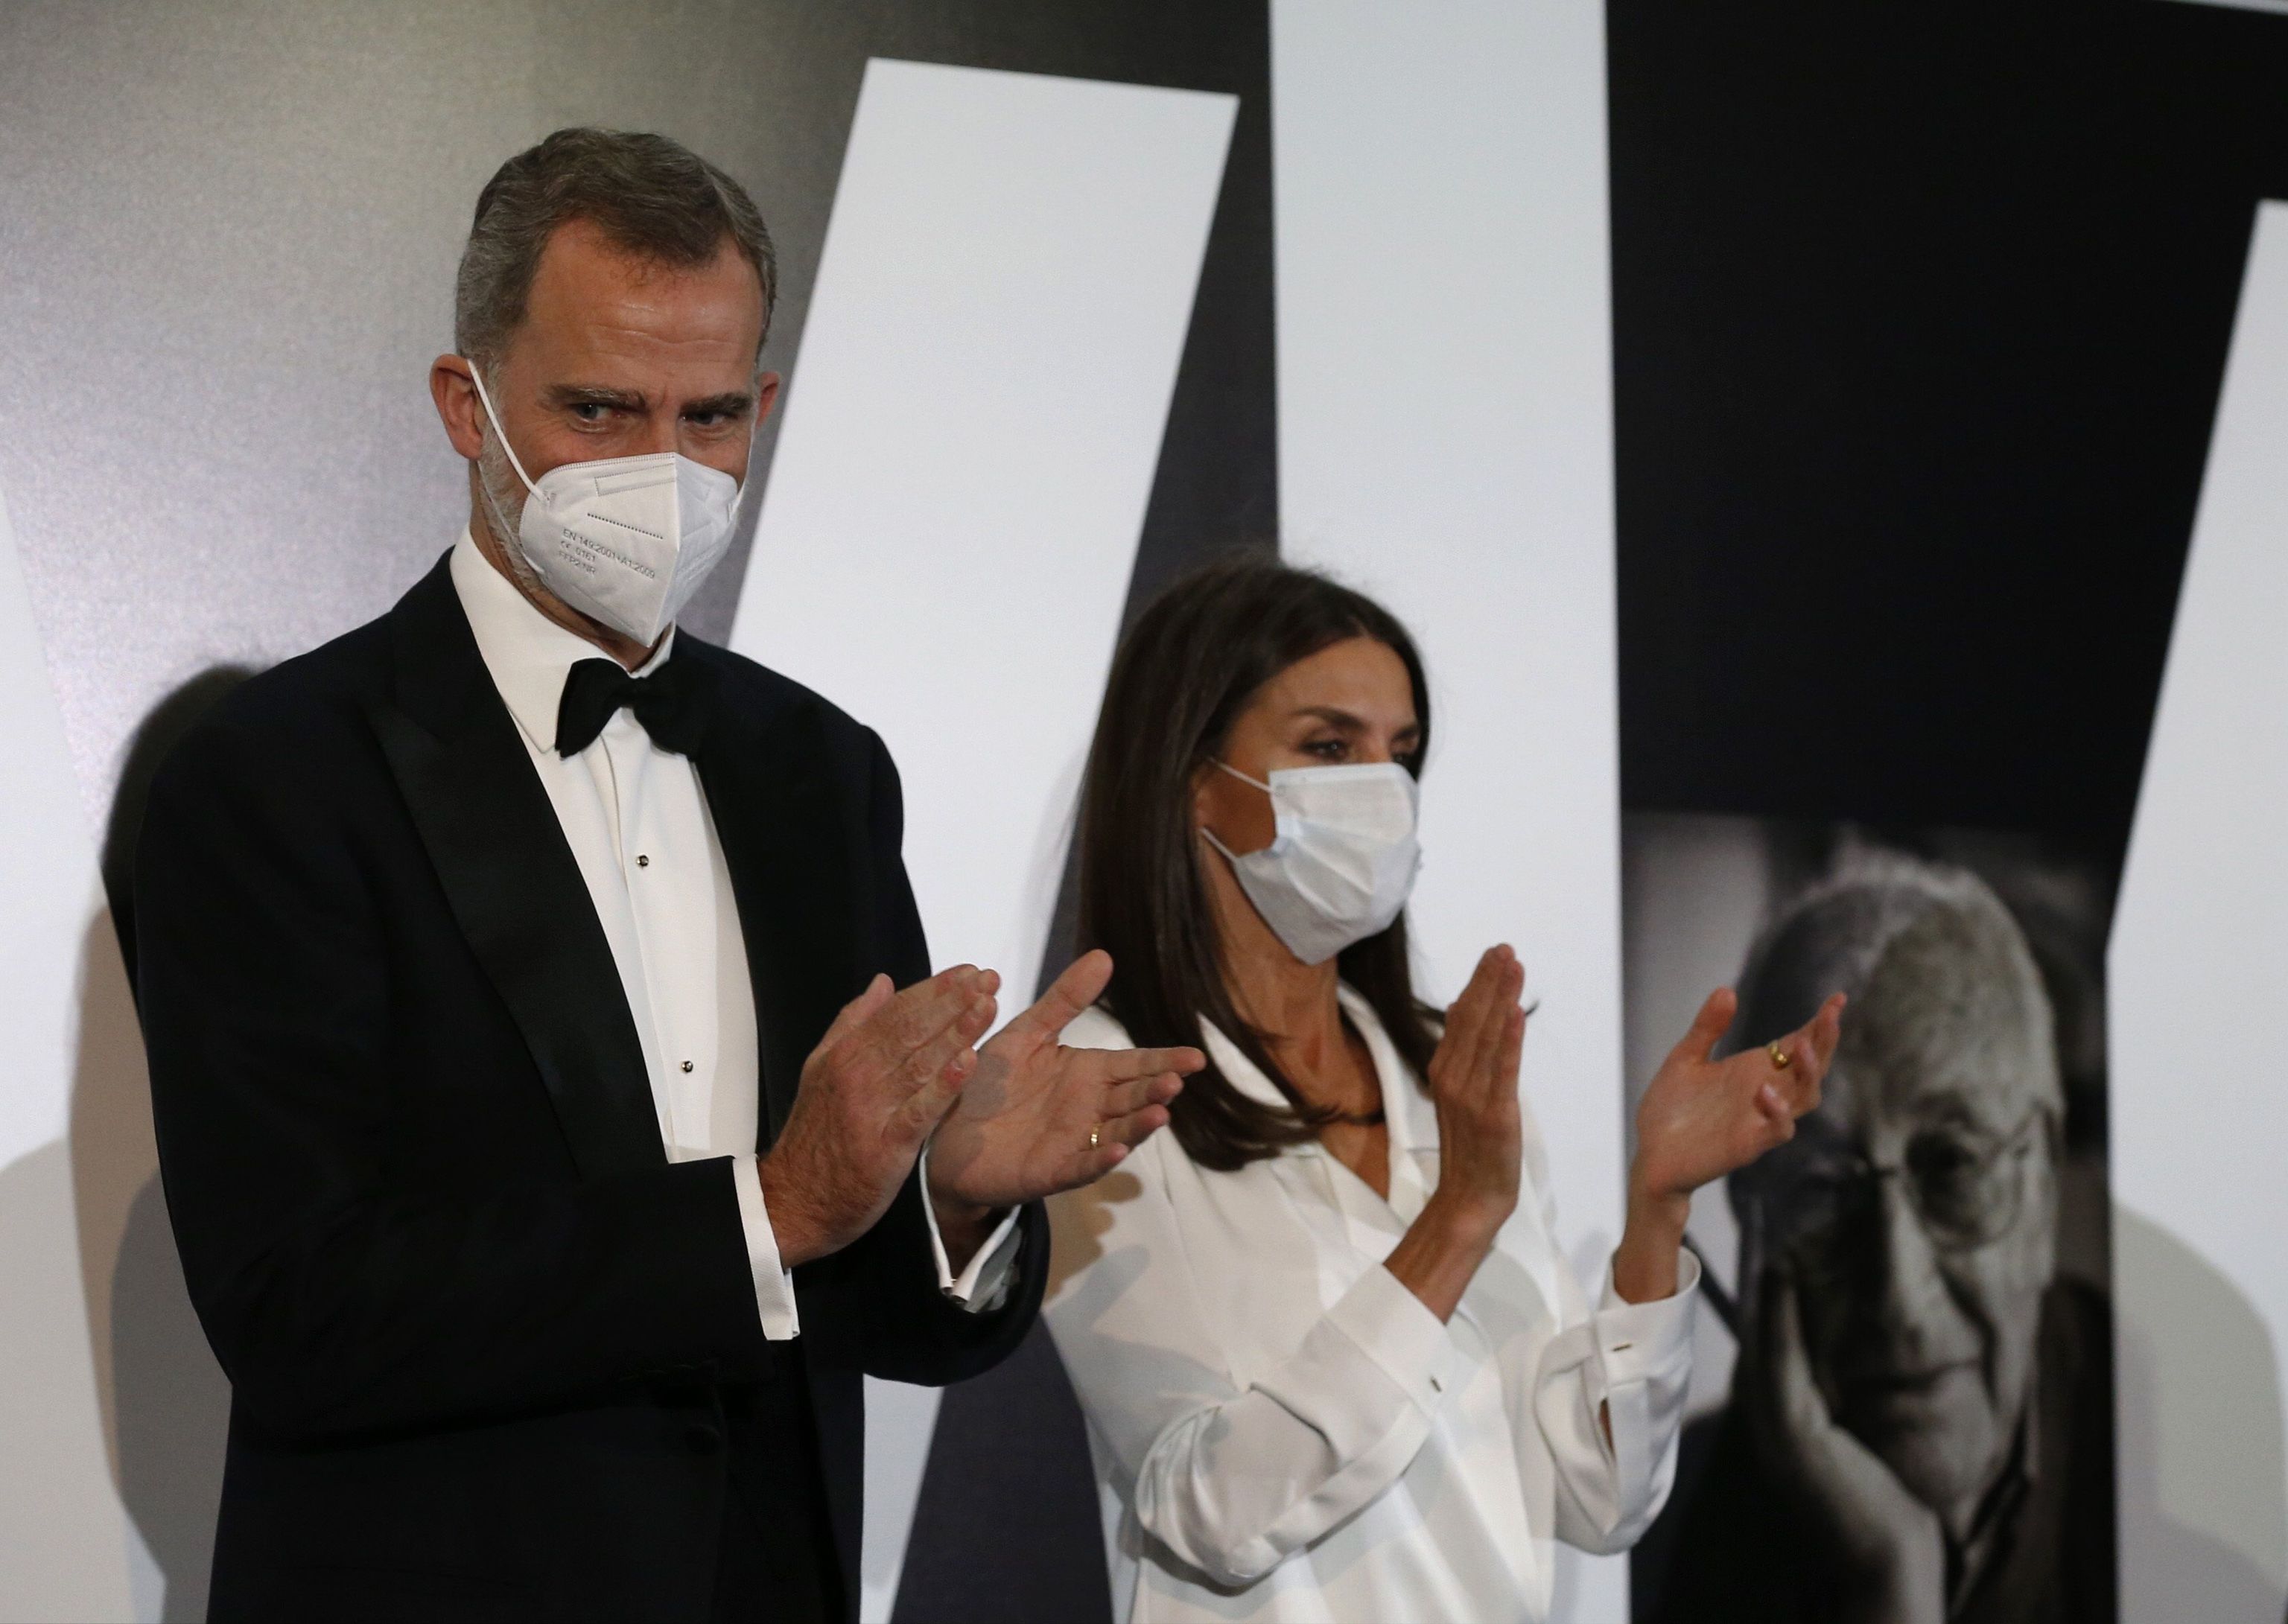 El rey Felipe y la reina Letizia durante el acto de la entrega de los Premios Internacionales de Periodismo "Mariano de Cavia", "Luca de Tena" y "Mingote", este martes en la sede del ABC, en Madrid.